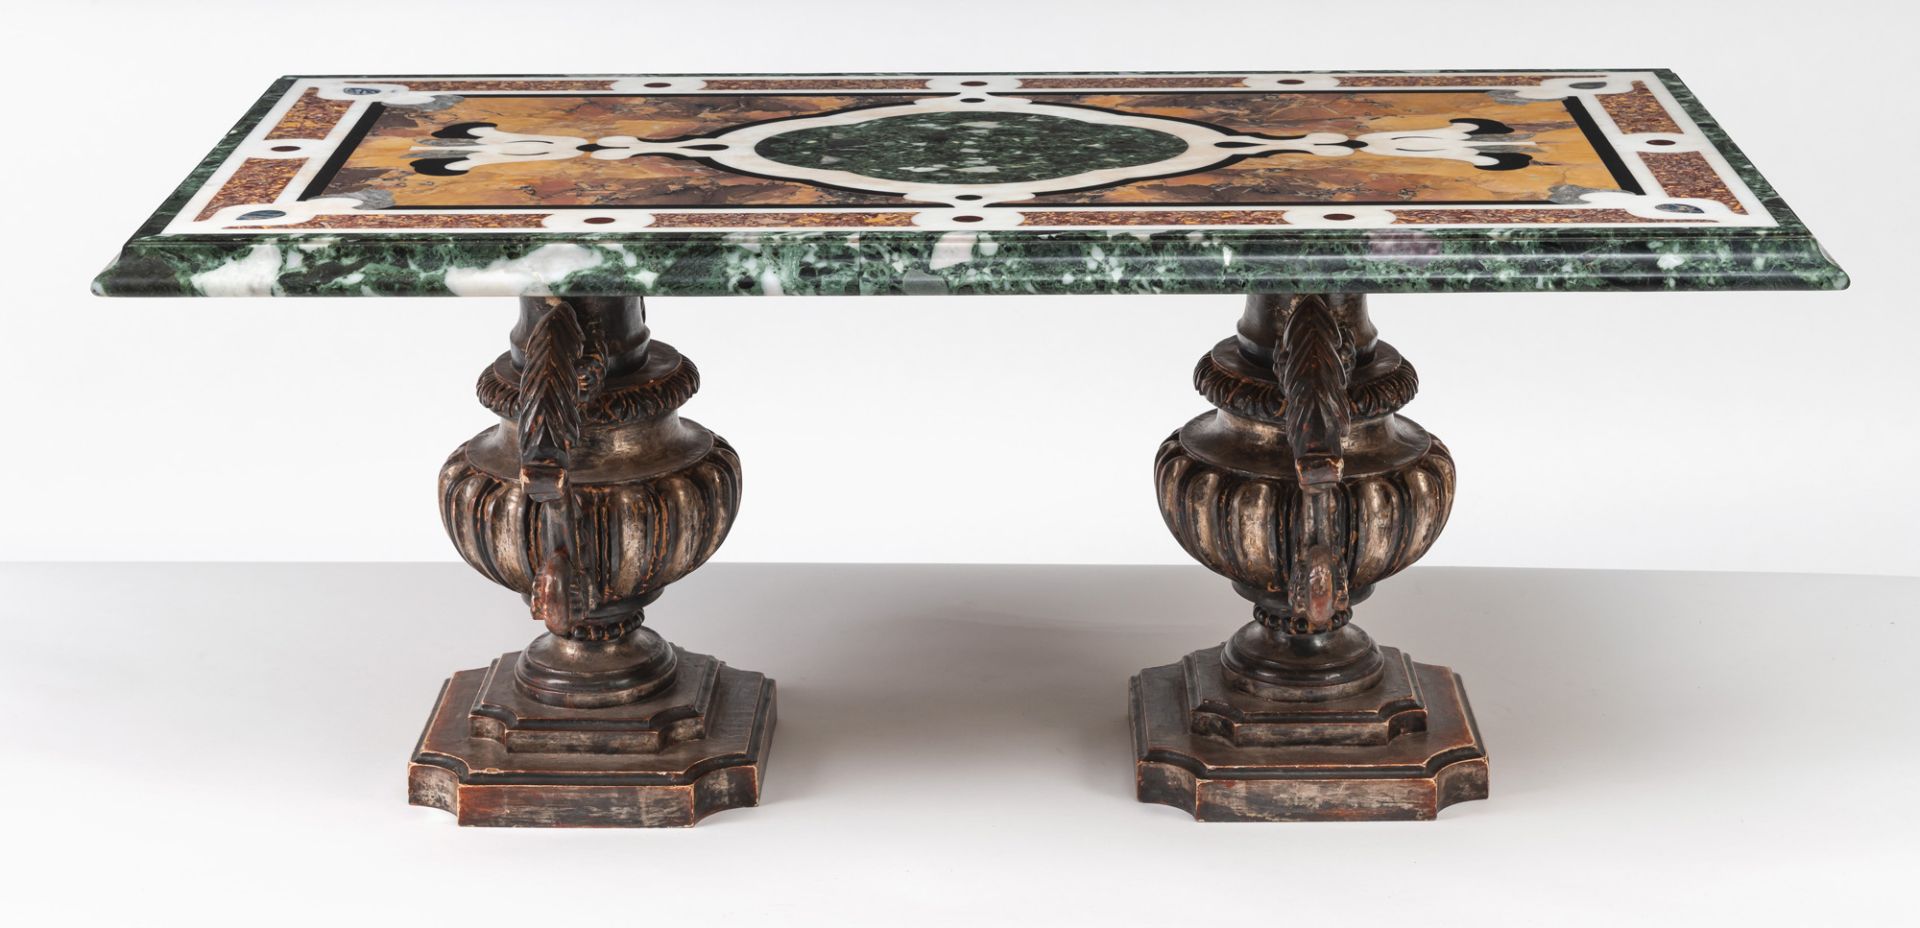 Pietra-Dura-Tischplatte mit zwei Vasen-Füßen - Bild 4 aus 6